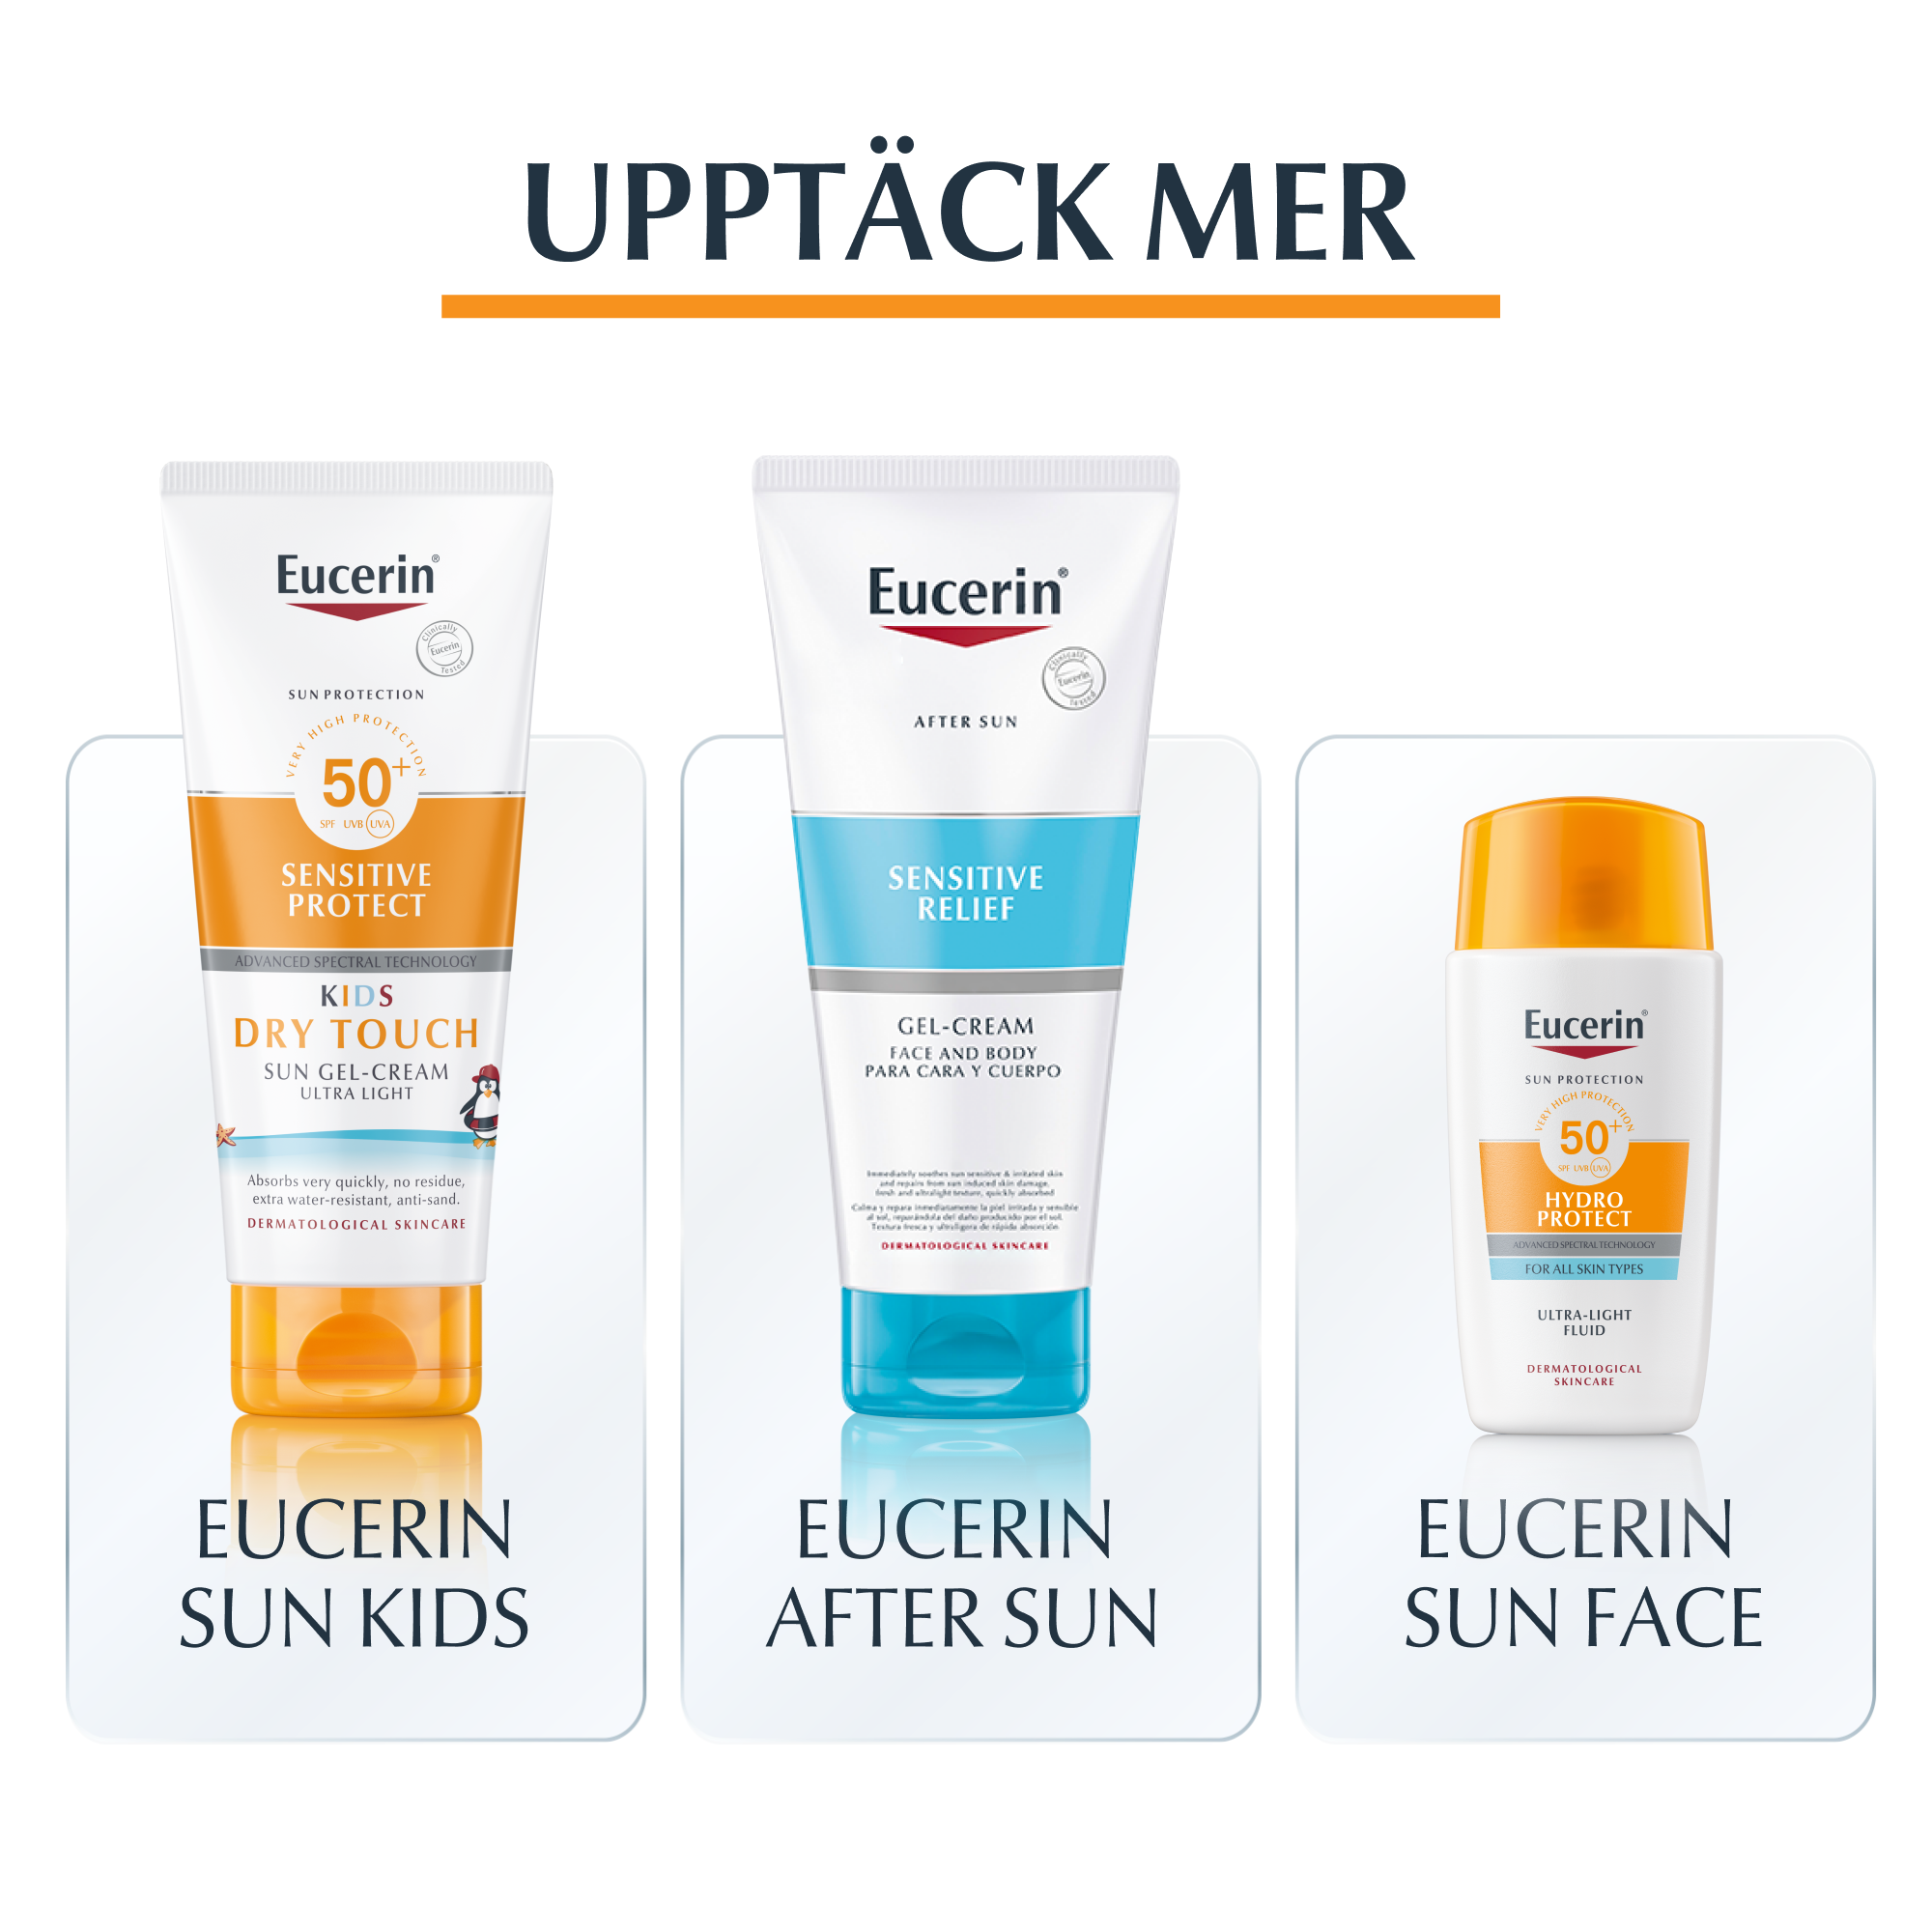 Bild som visar fler produkter inom Eucerin Sun Sortimentet